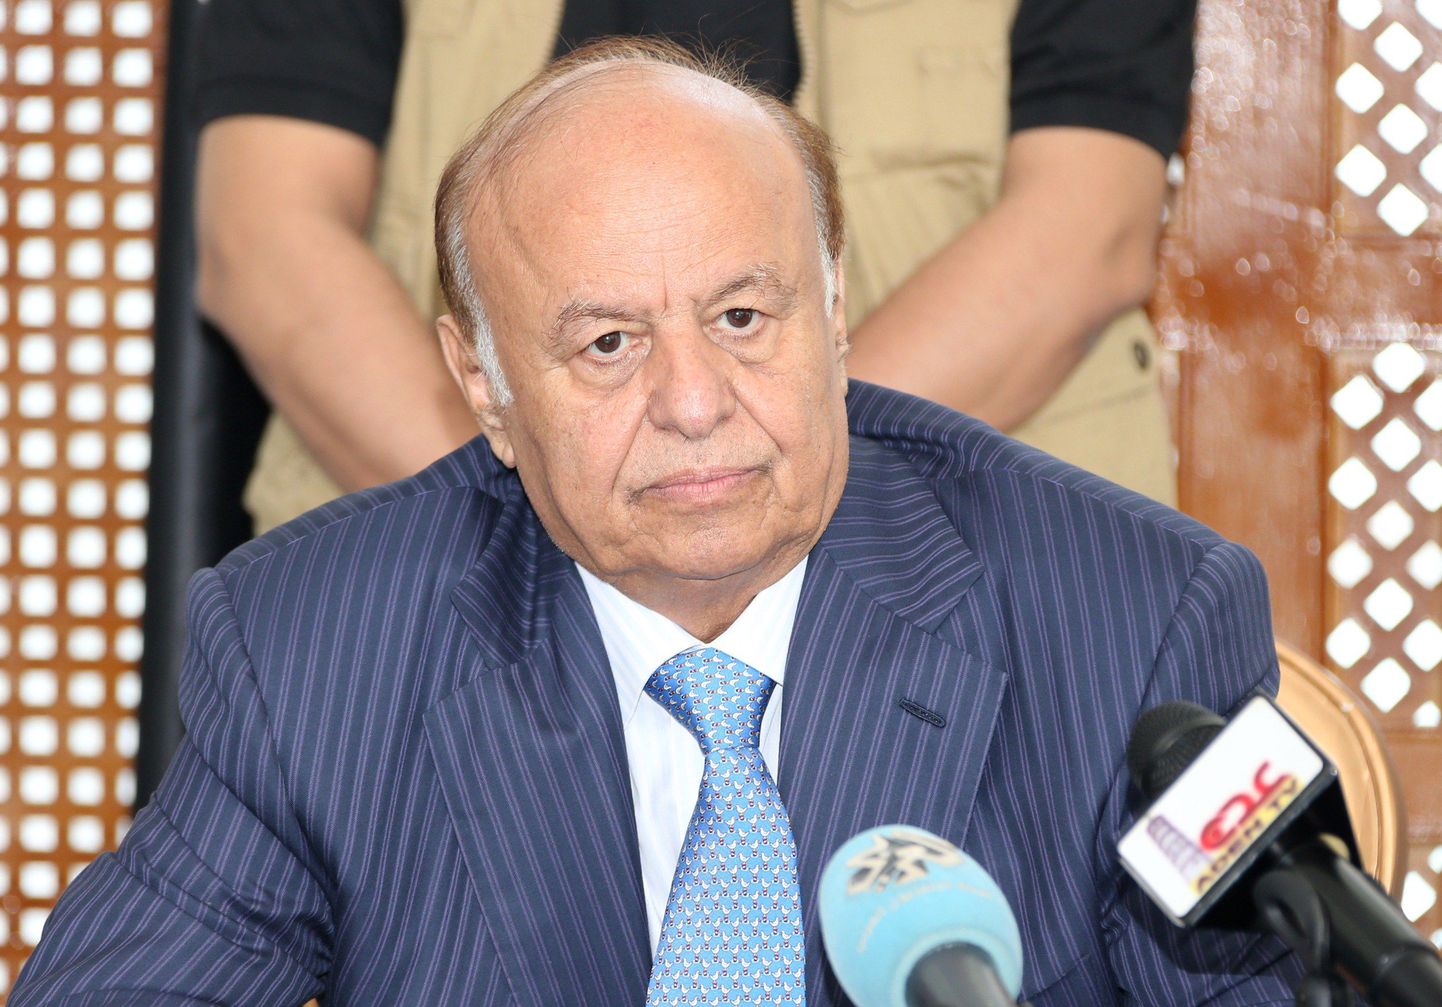 Jeemeni president Abedrabbo Mansour Hadi